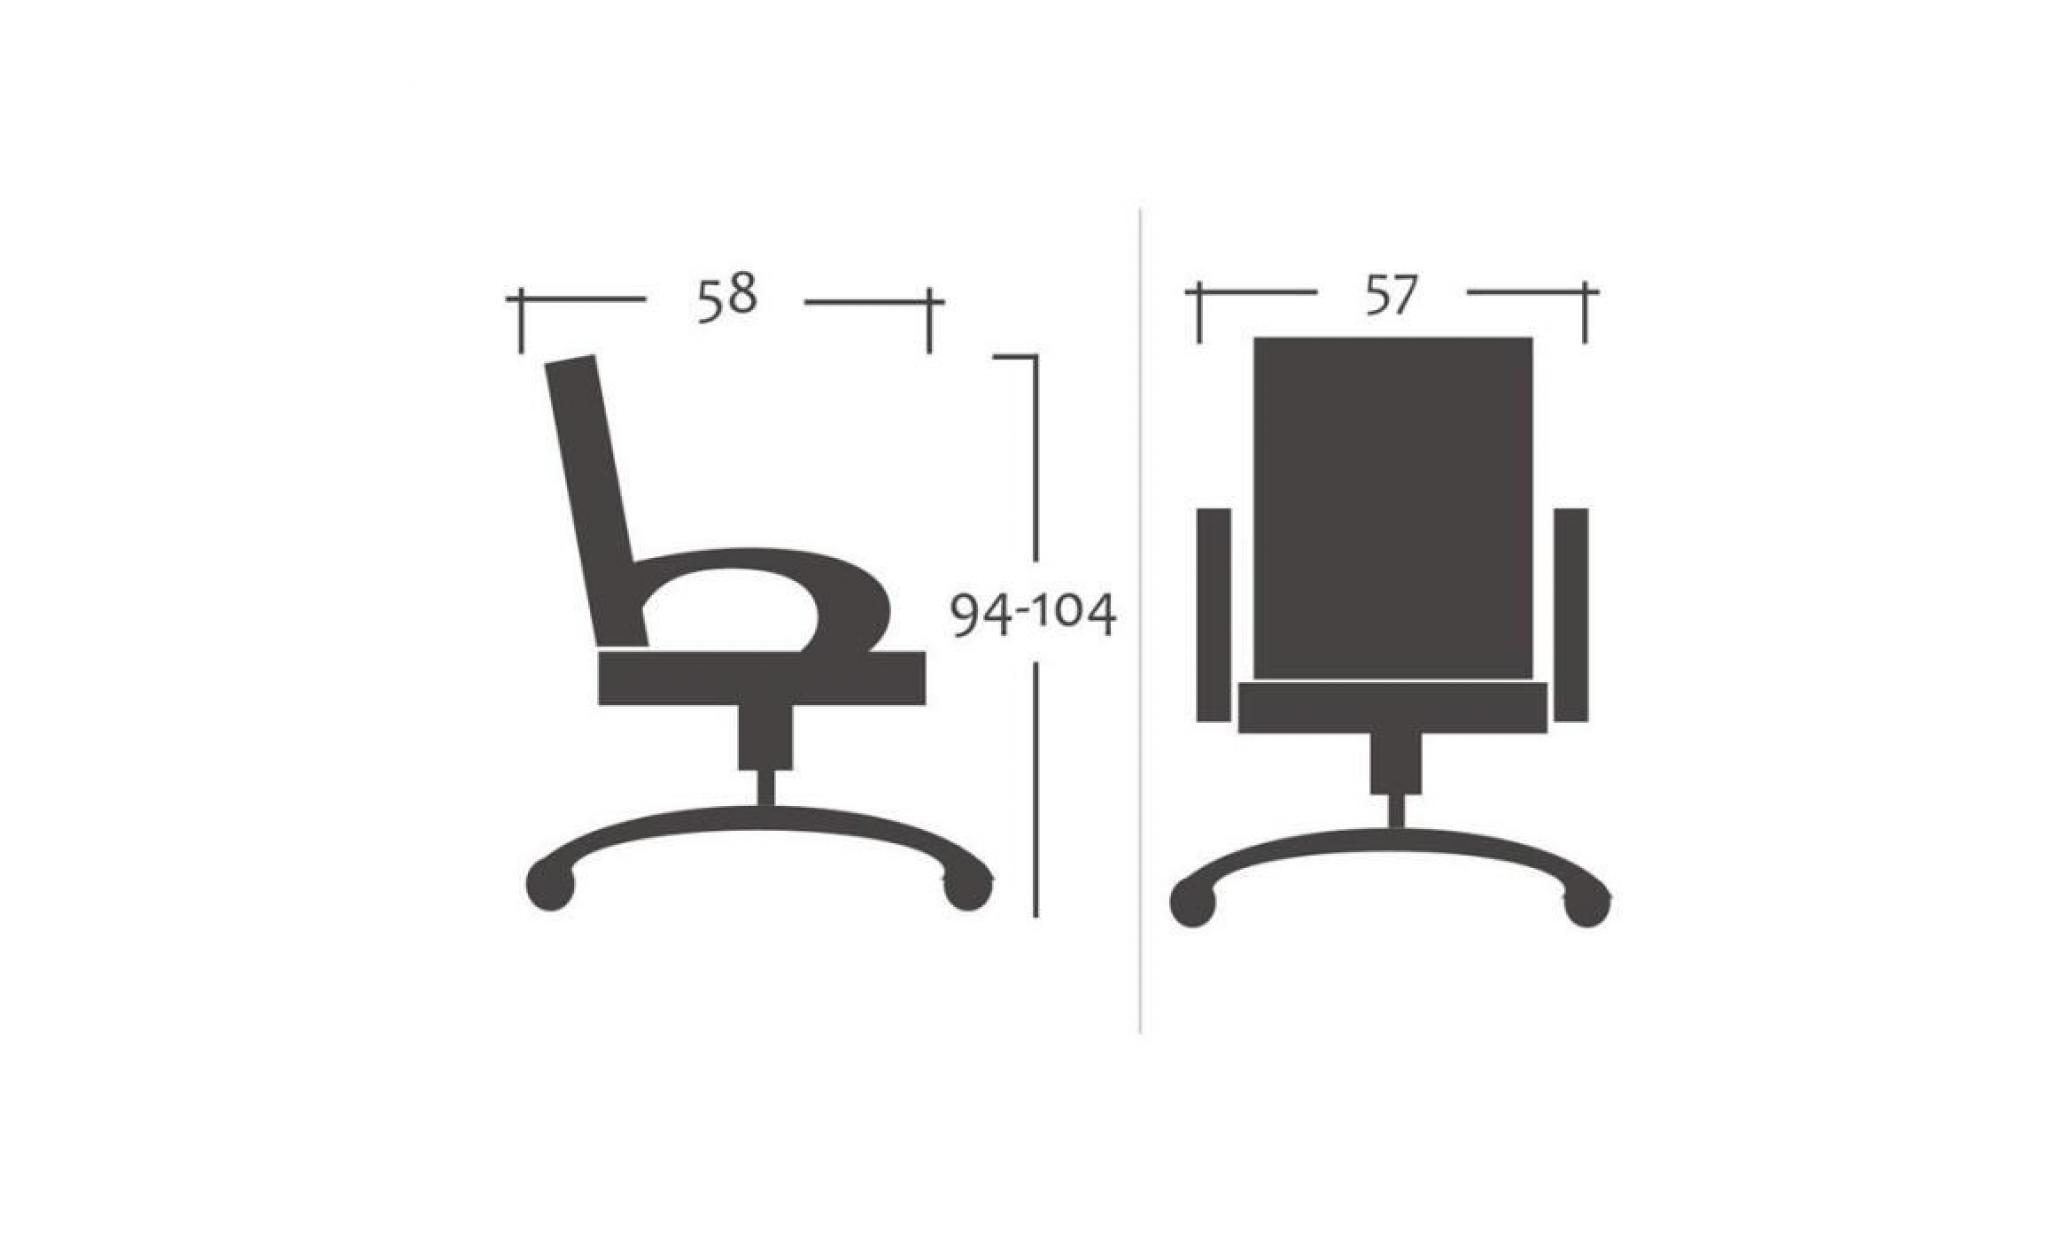 chaise de bureau pivotante grise/noire   myco00523 pas cher